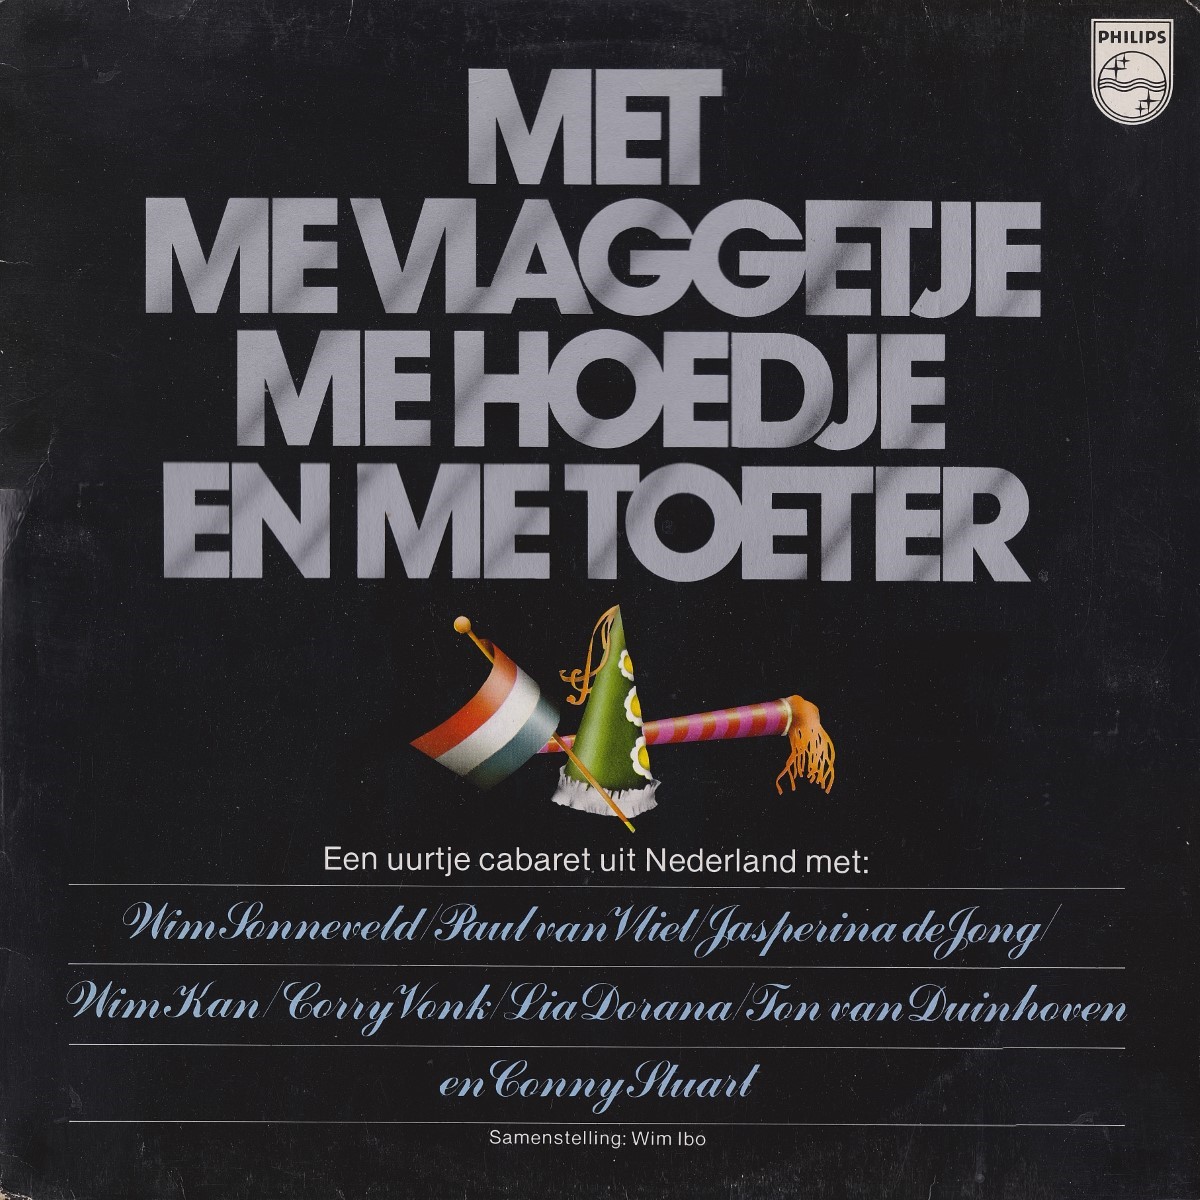 Met Me Vlaggetje Me Hoedje En Me Toeter (1977)